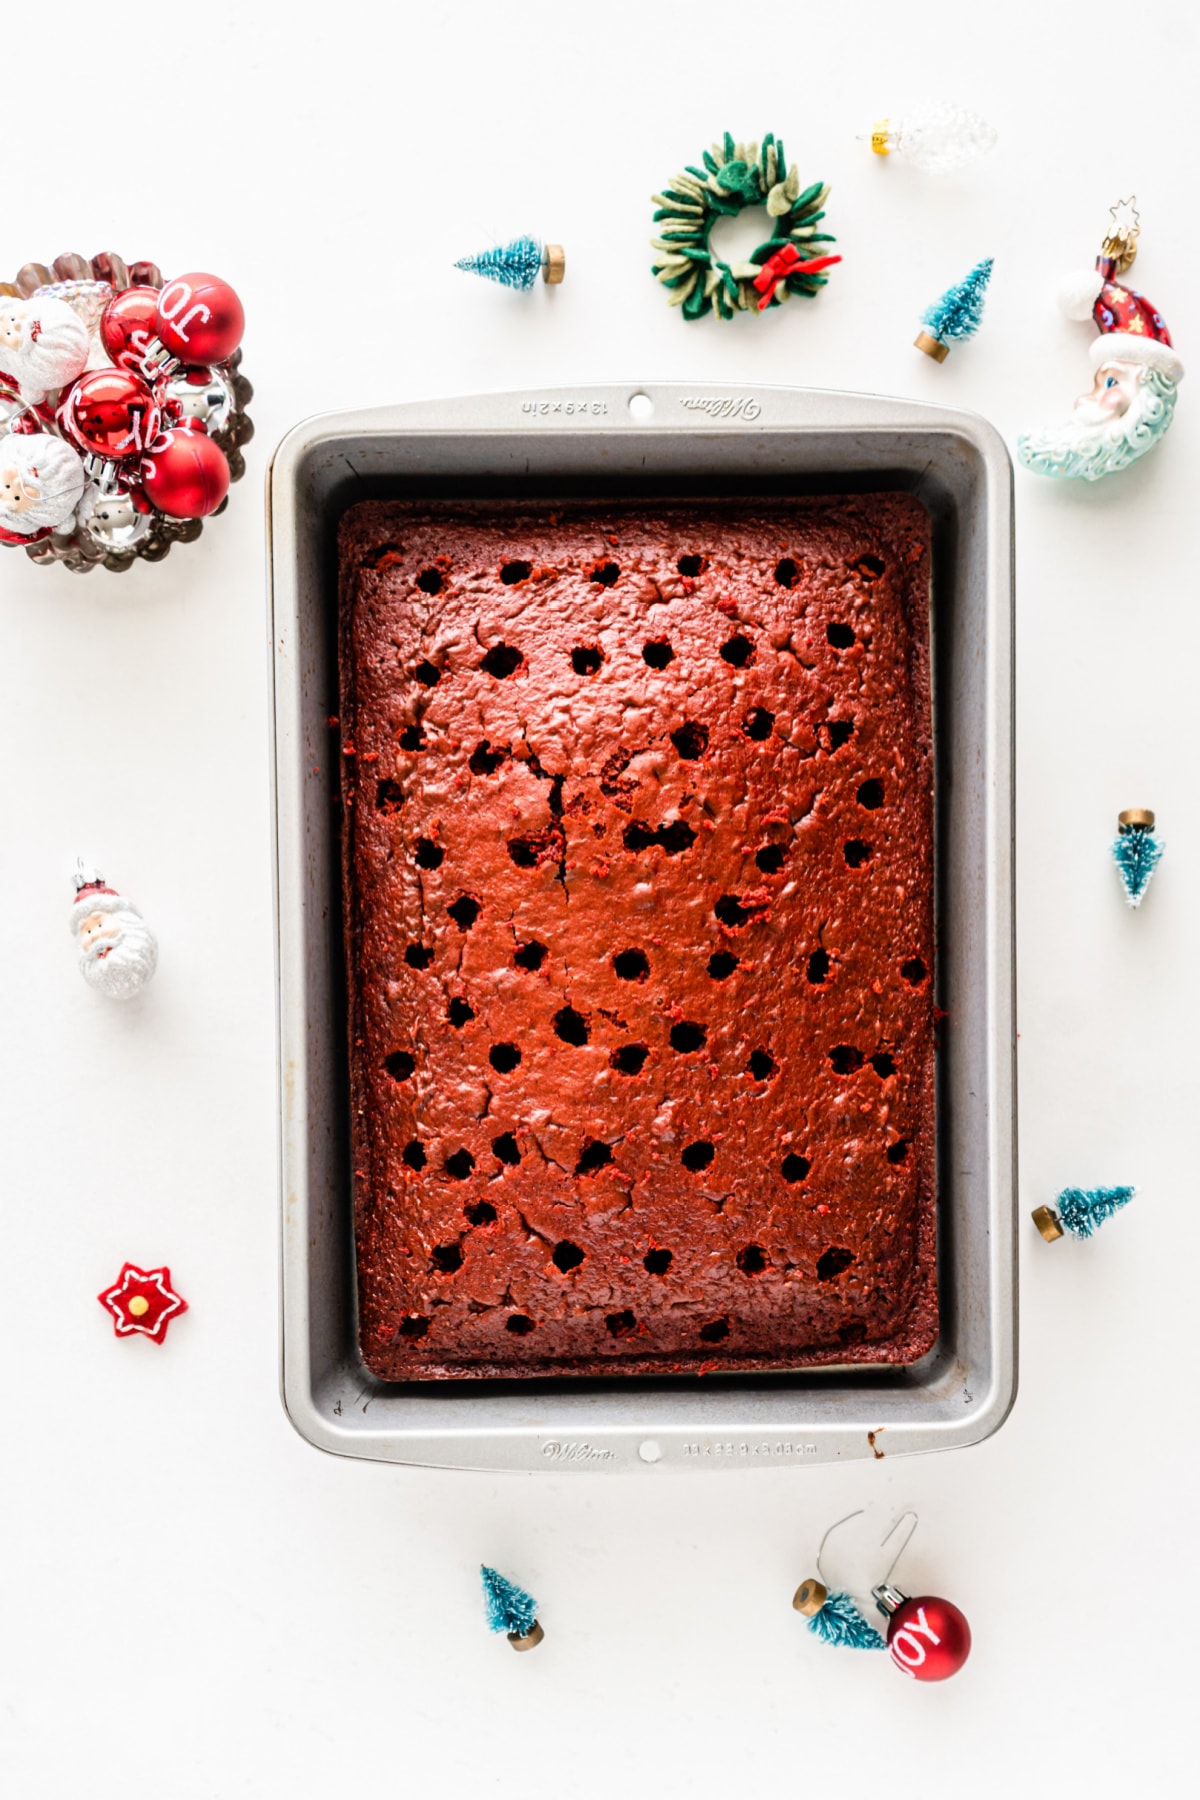 Red velvet cake with holes